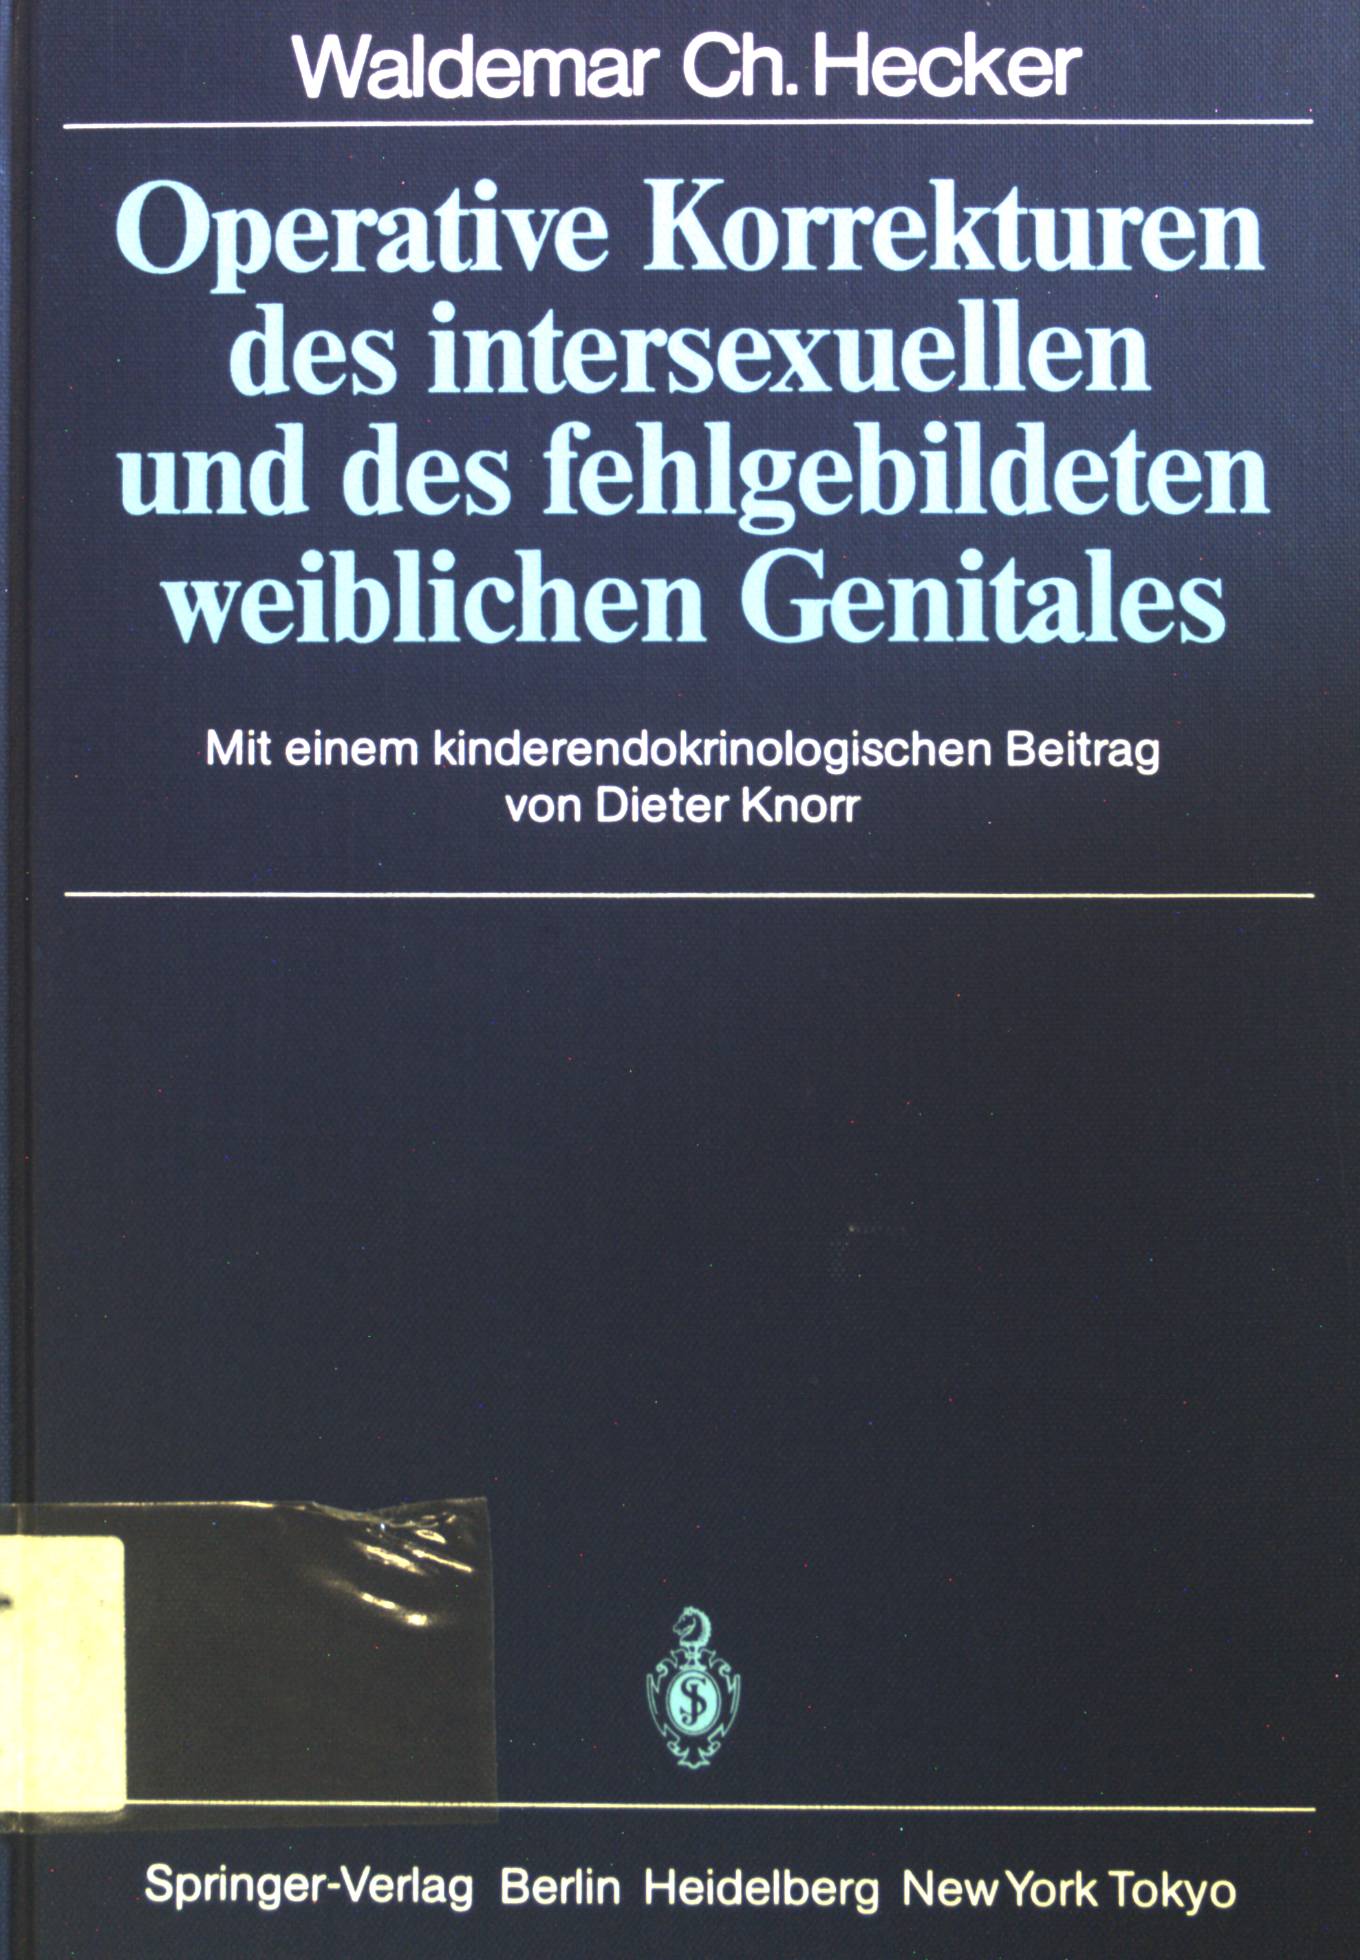 Operative Korrekturen des intersexuellen und des fehlgebildeten weiblichen Genitales. - Hecker, Waldemar Christian